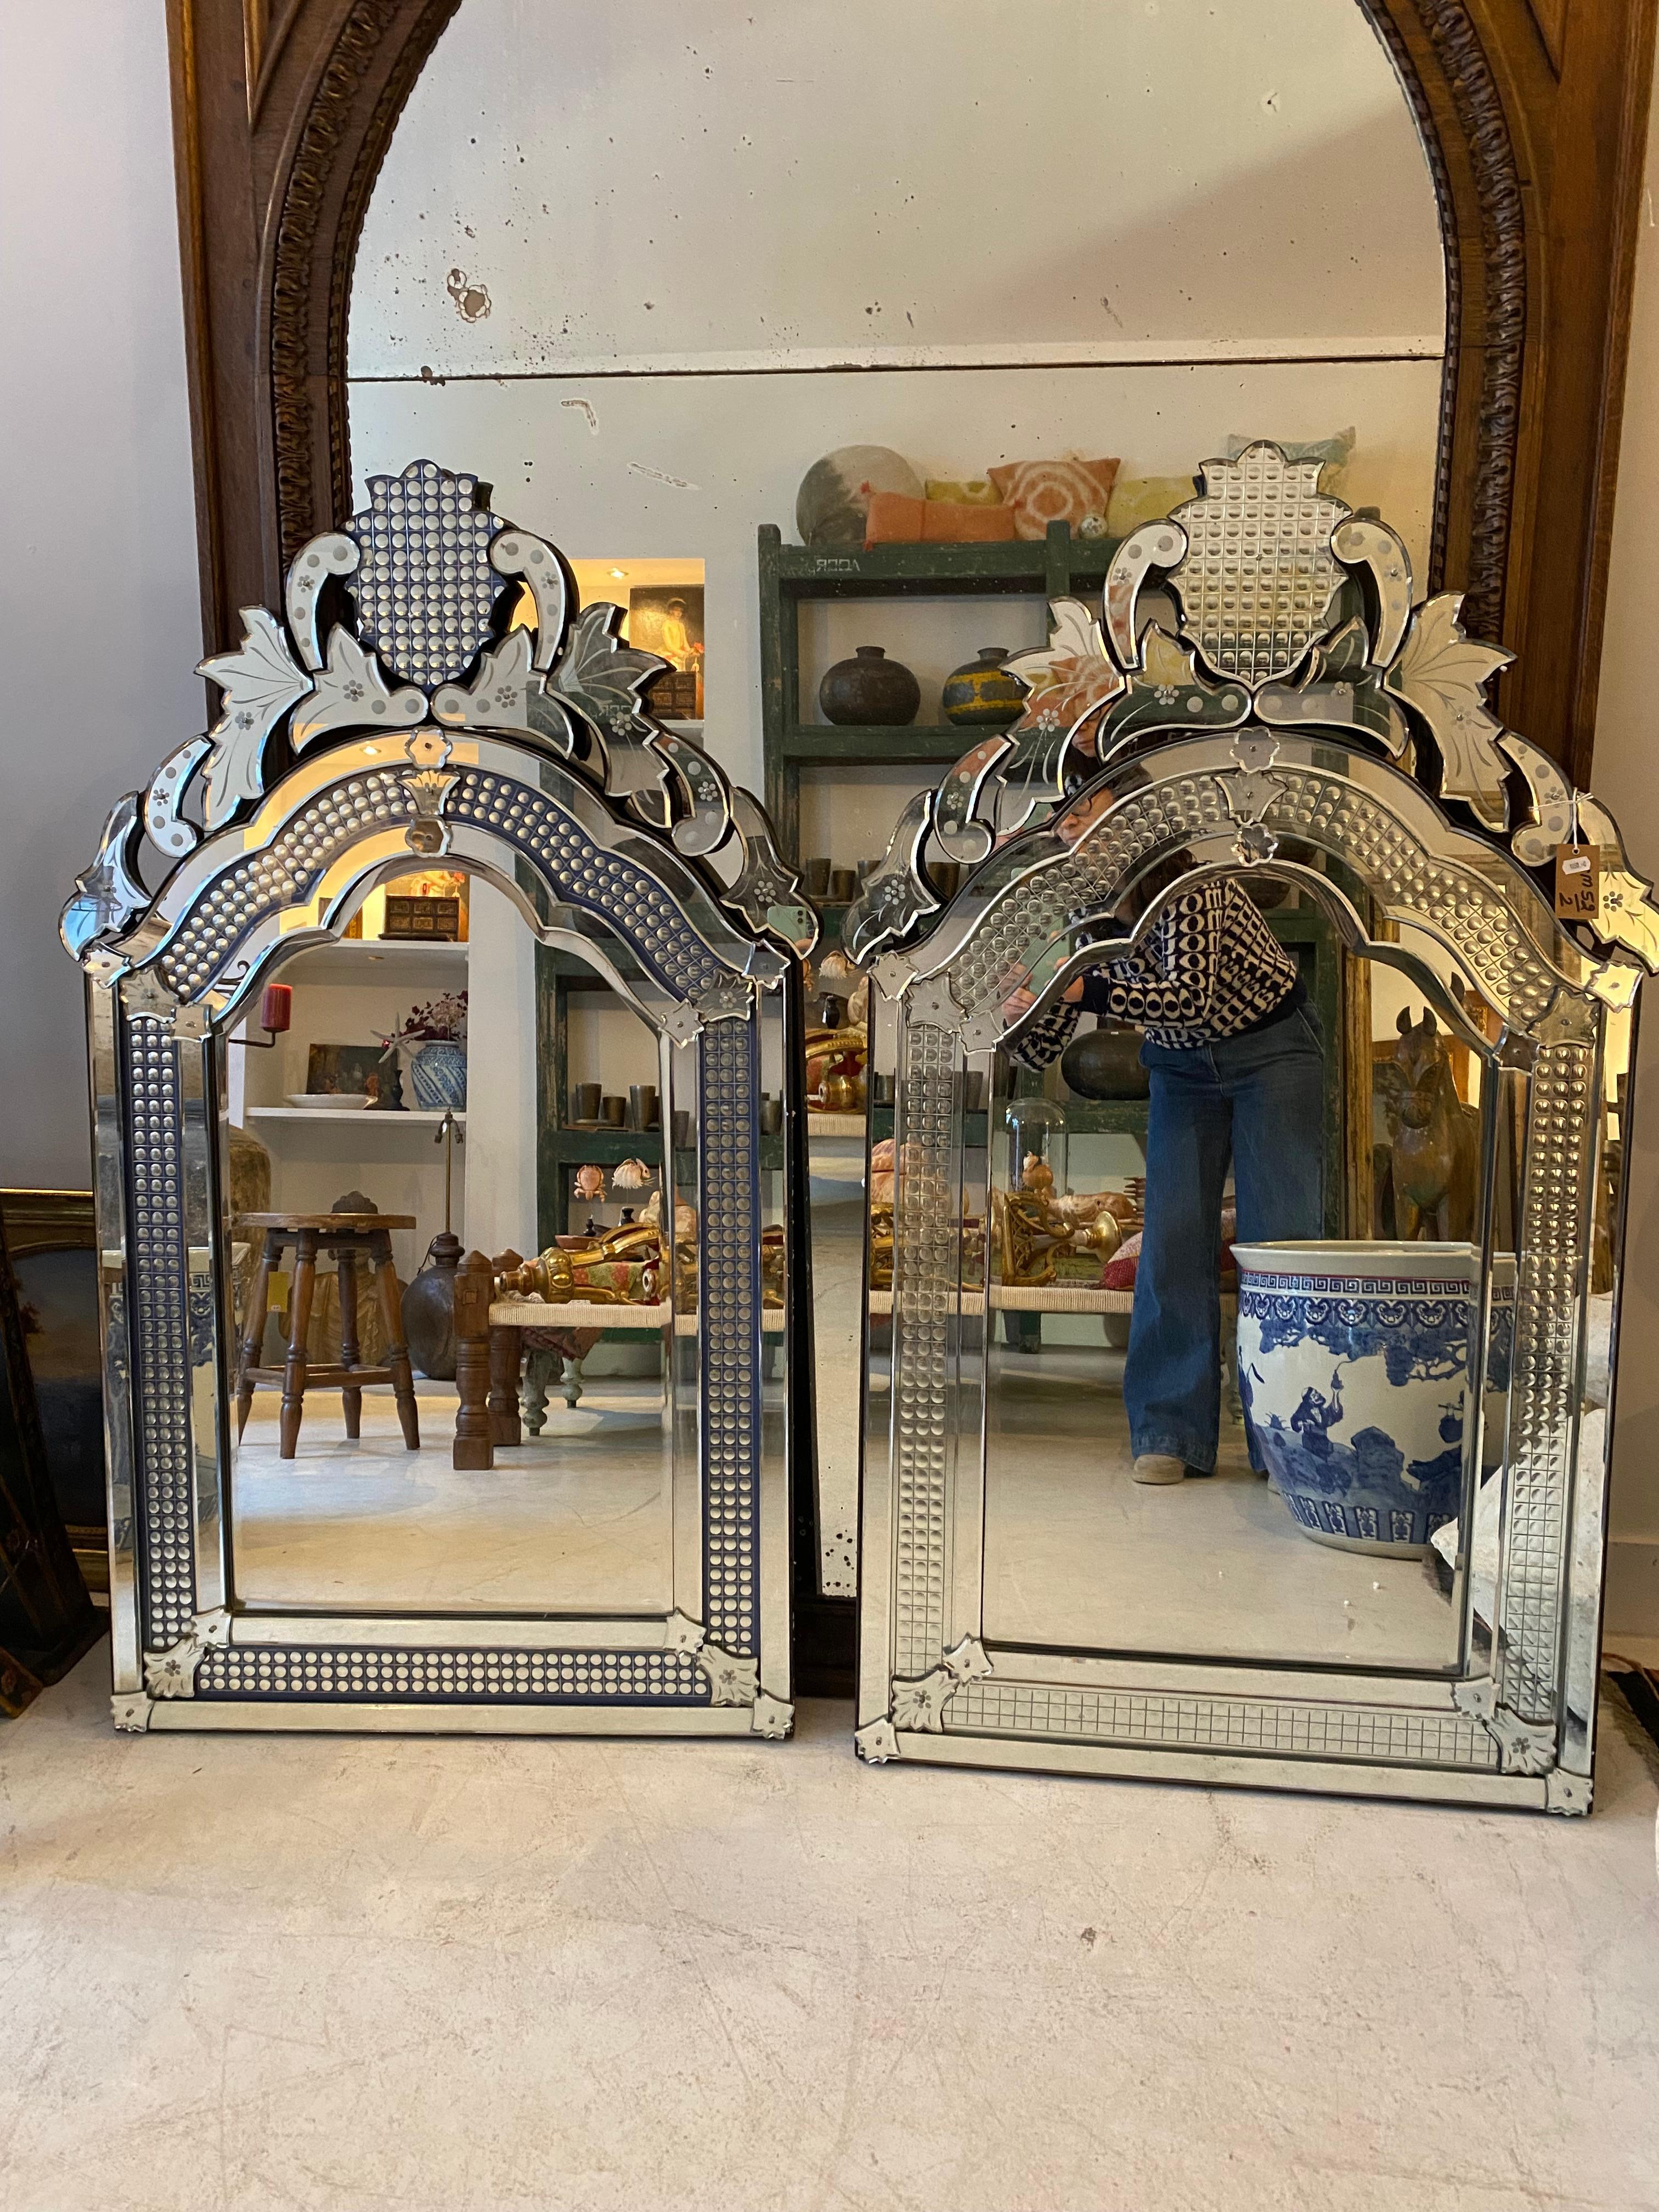 Deux miroirs de style vénitien formant une paire
Délicieux motifs géométriques 
